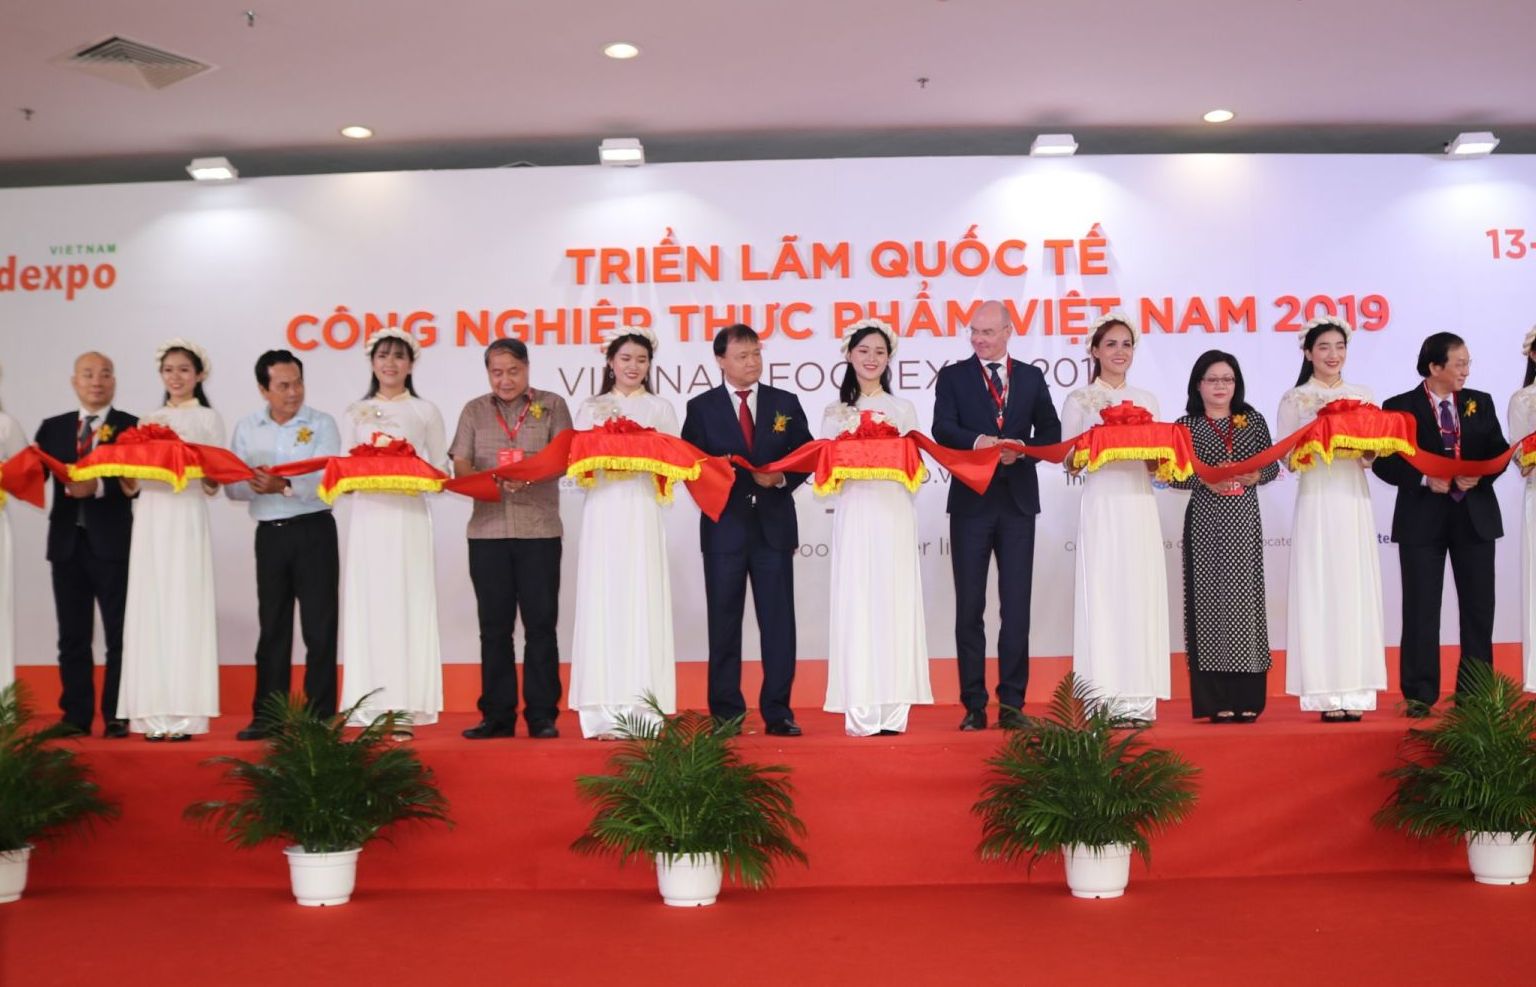 Hứa hẹn đột phá tại Triển lãm Vietnam FoodExpo 2019